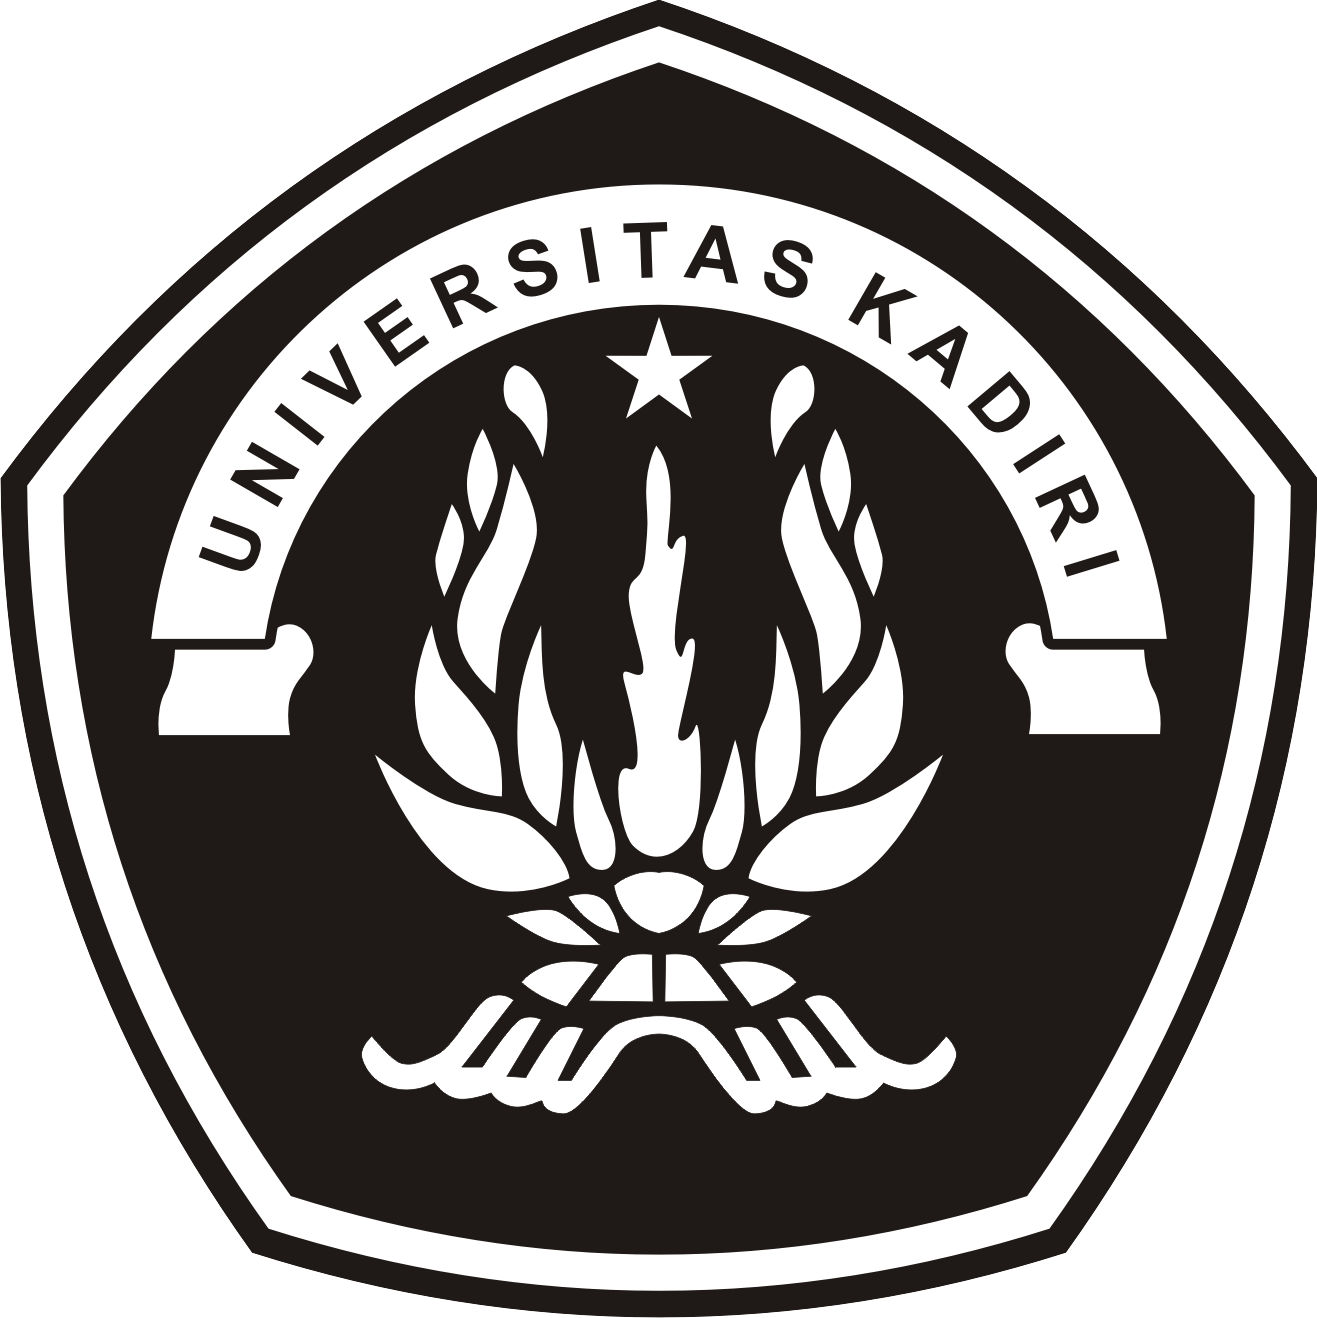  LOGO  UNIK  Gambar Logo 